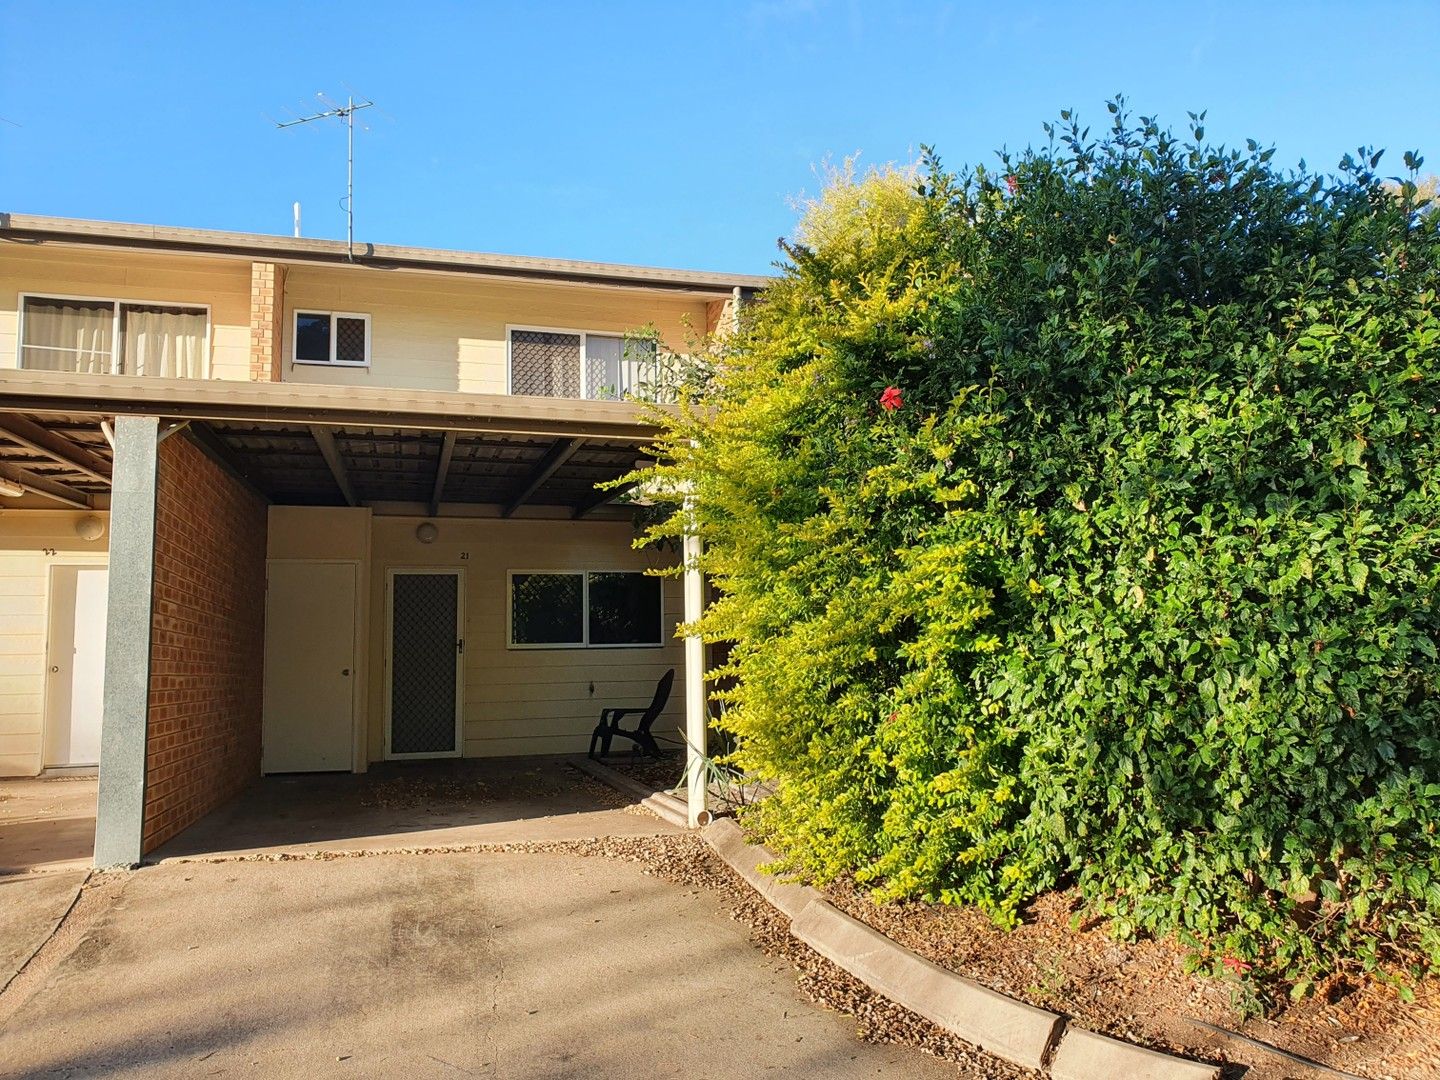 2 bedrooms Apartment / Unit / Flat in  EMERALD QLD, 4720